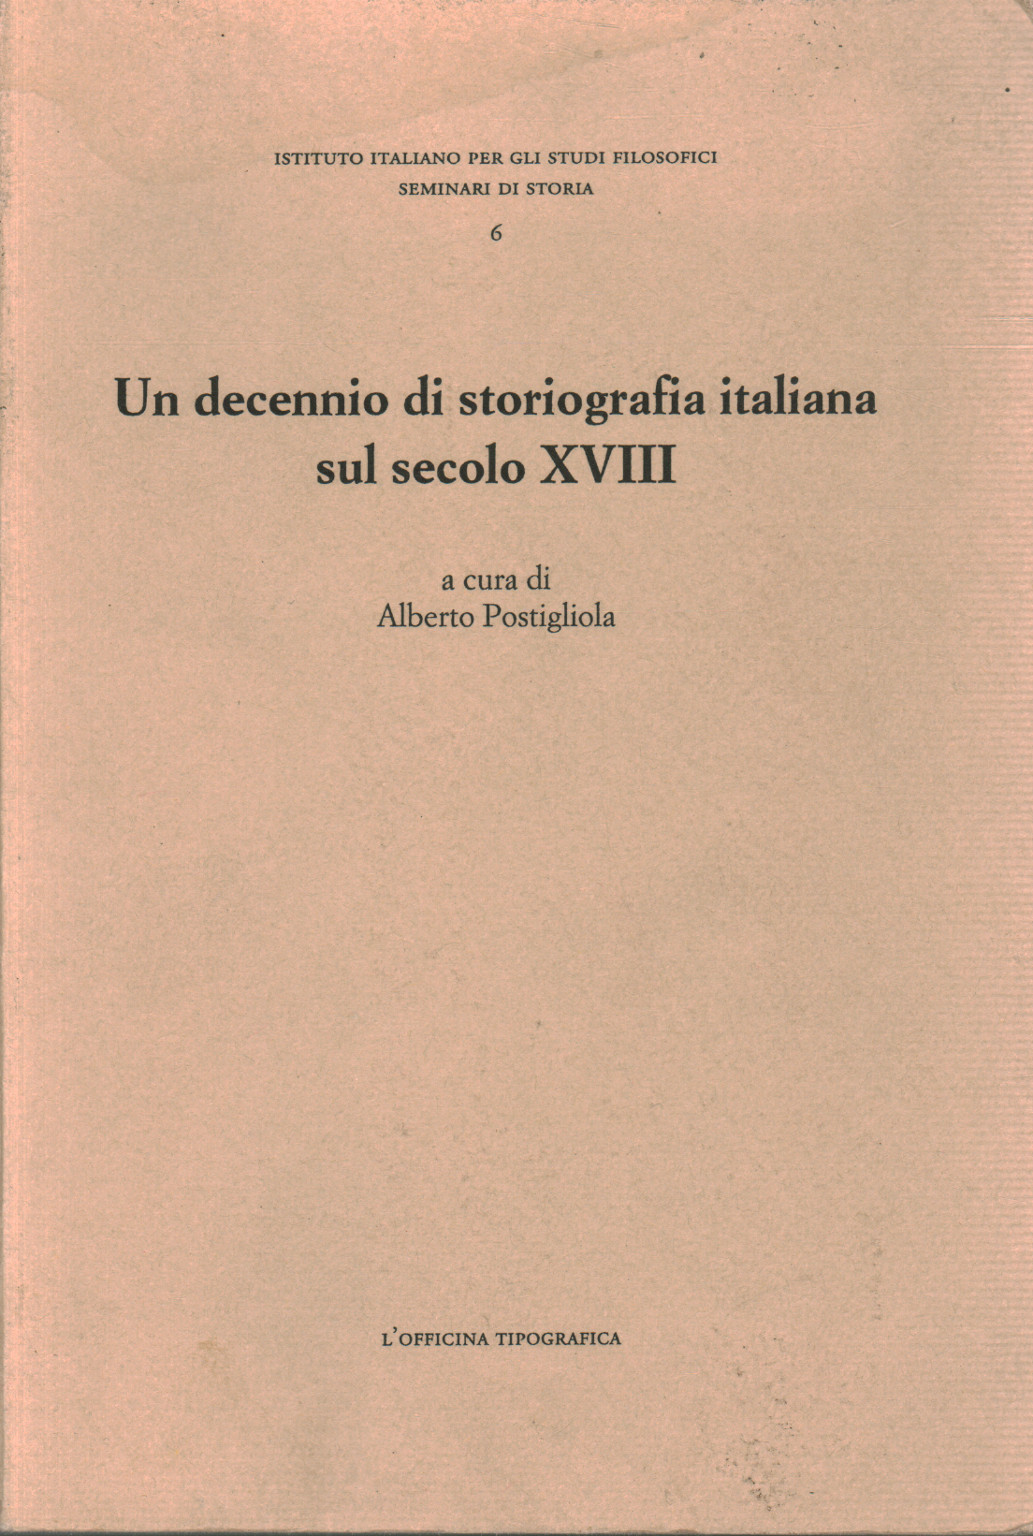 Un decennio di storiografia italiana sul secolo XV, s.a.